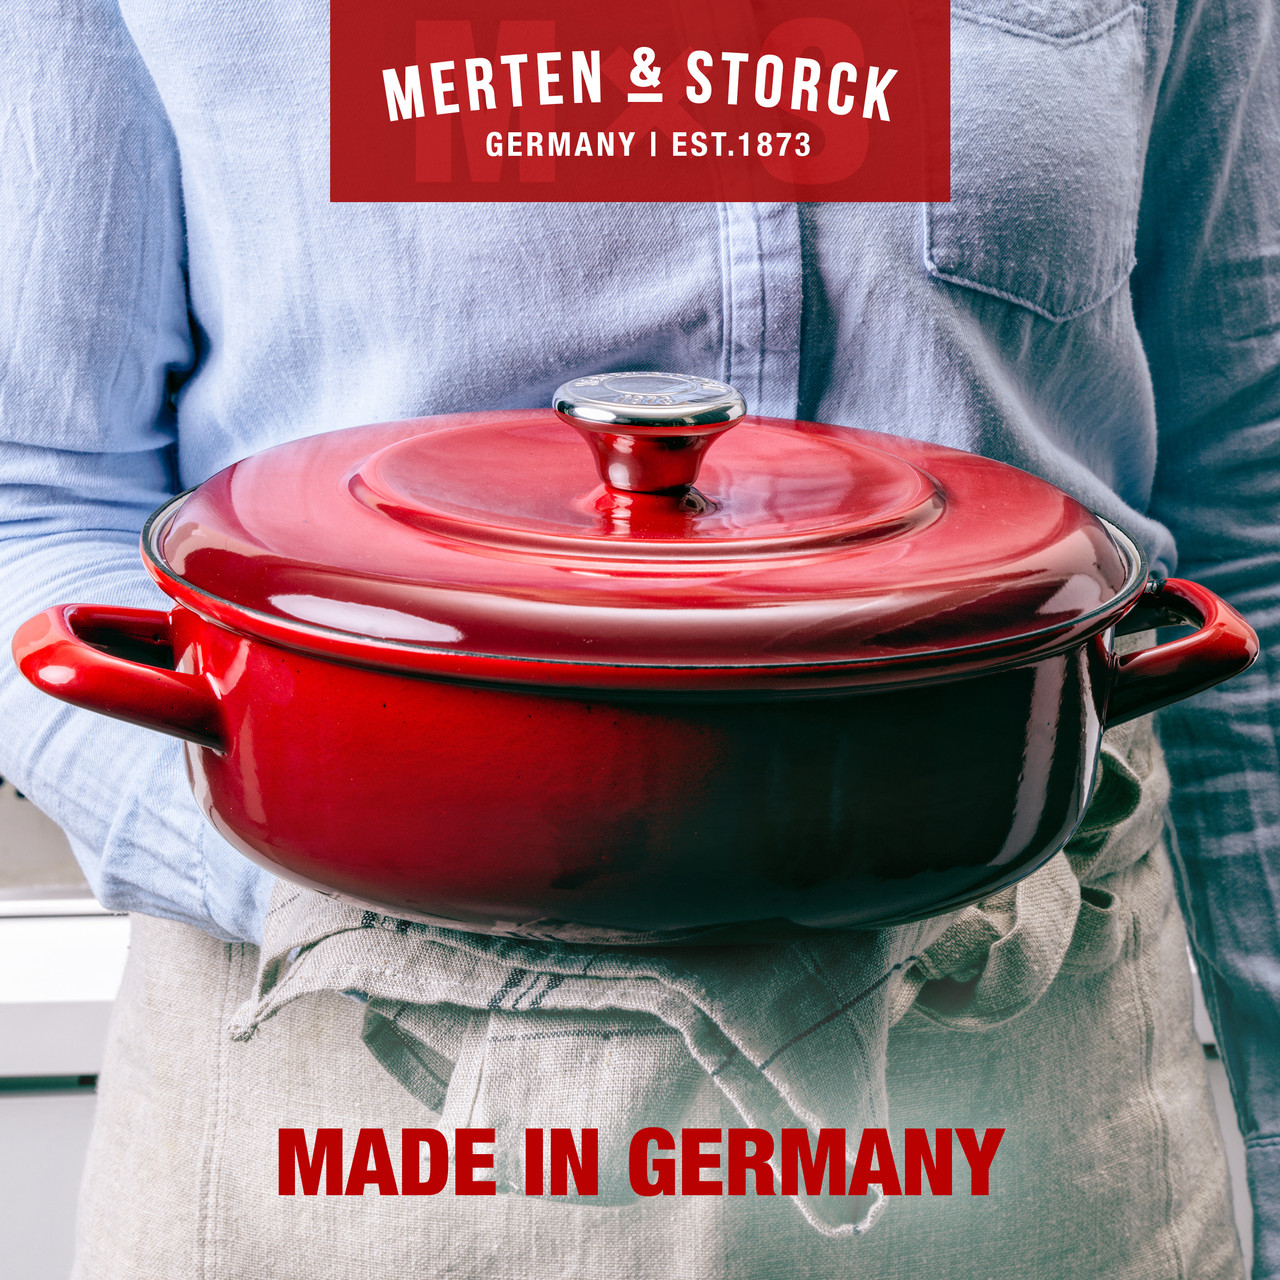 Merten & Storck German Enameled Iron 4 Quart Dutch Oven